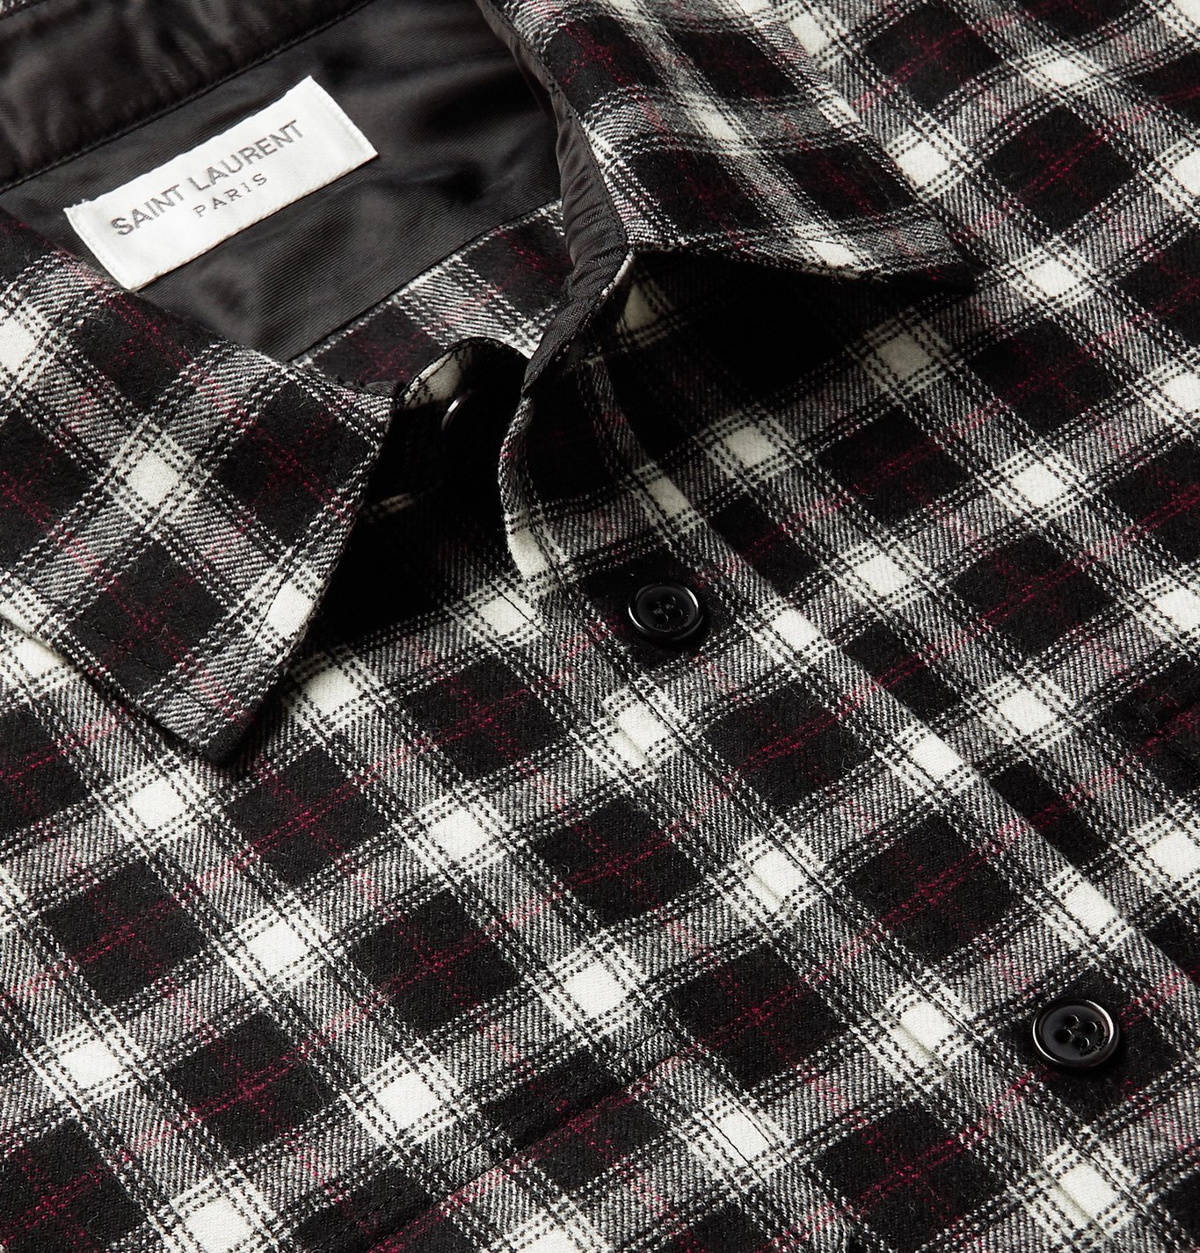 SAINT LAURENT - Checked Wool-Blend Flannel Shirt - Black Saint Laurent